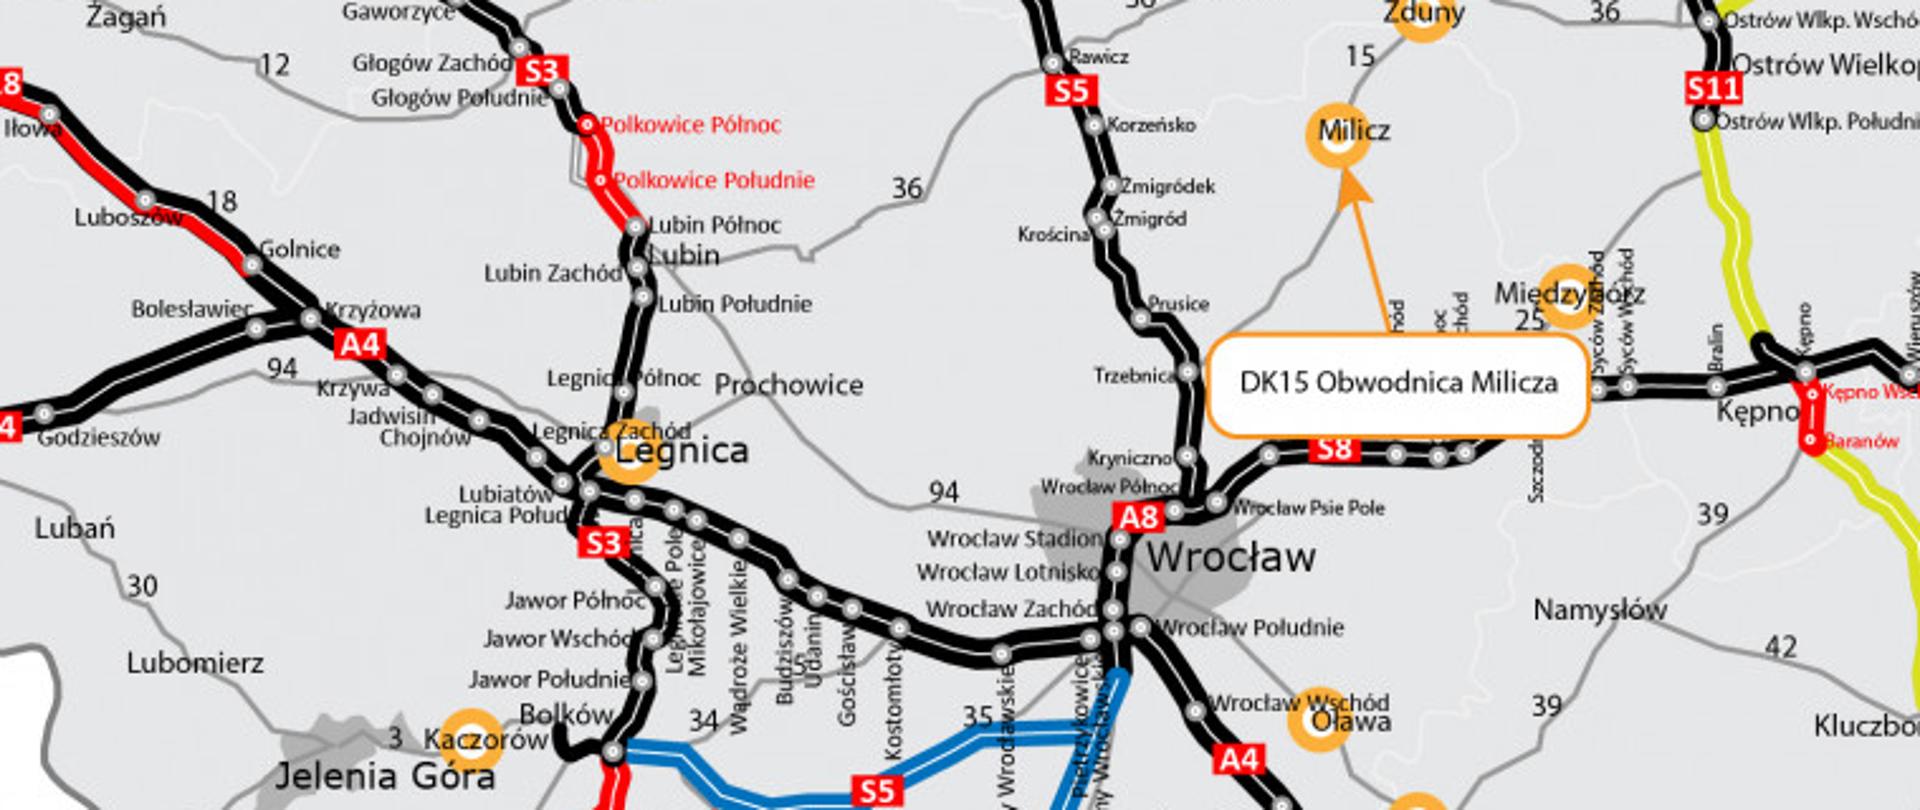 na zdjęciu widać mapę Dolnego Śląska i zaznaczoną obwodnicę Milicza